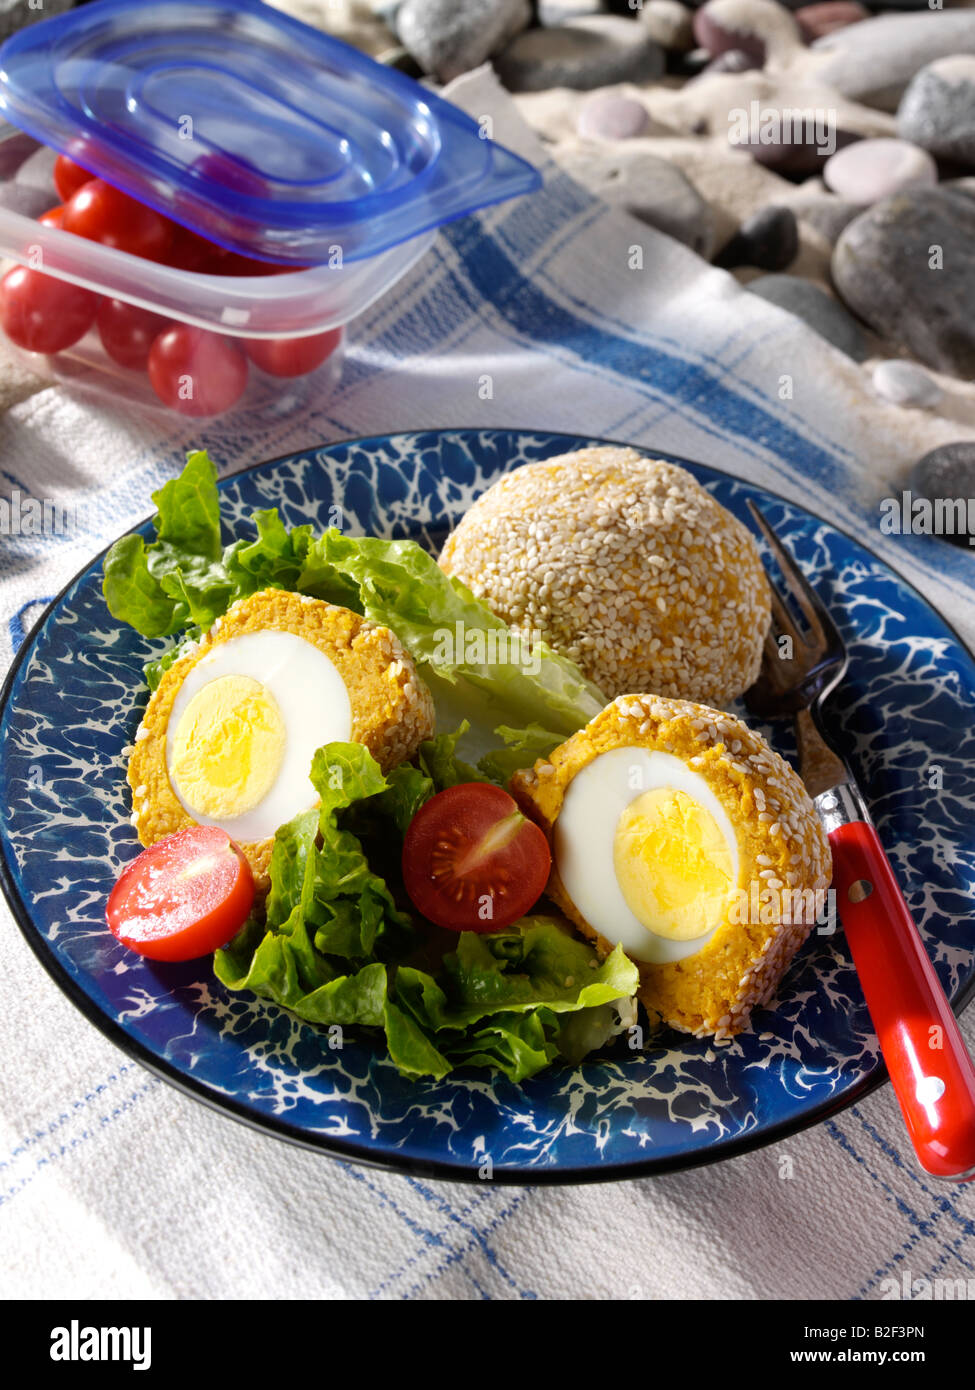 Falafel-Eiern an einem Strand Picknick redaktionelle Essen Stockfoto